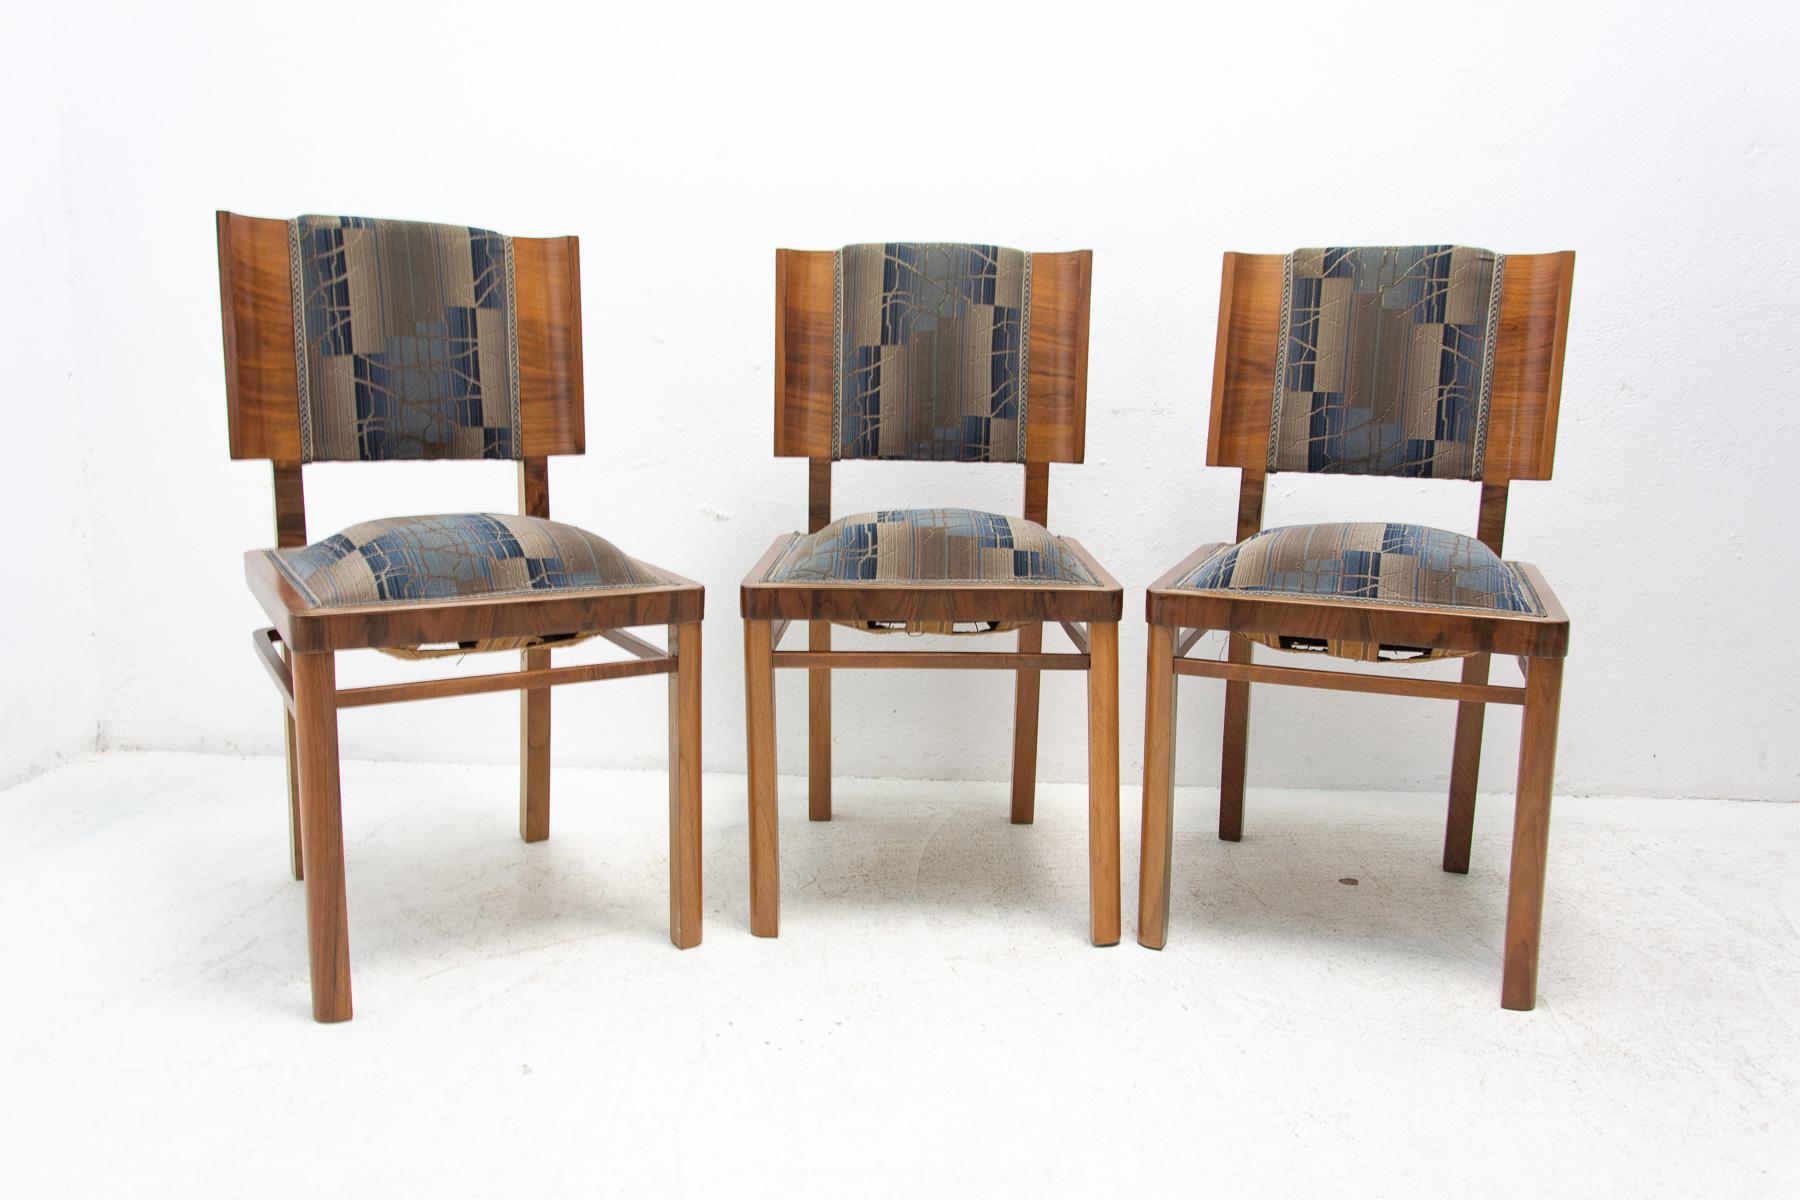 Chaises ART DECO, fabriquées dans les années 1930 dans l'ancienne Tchécoslovaquie. En bois de noyer plaqué. Le placage est en excellent état. Les sièges sont légèrement surélevés en raison de l'âge, mais ils sont confortables. Sur une chaise, le